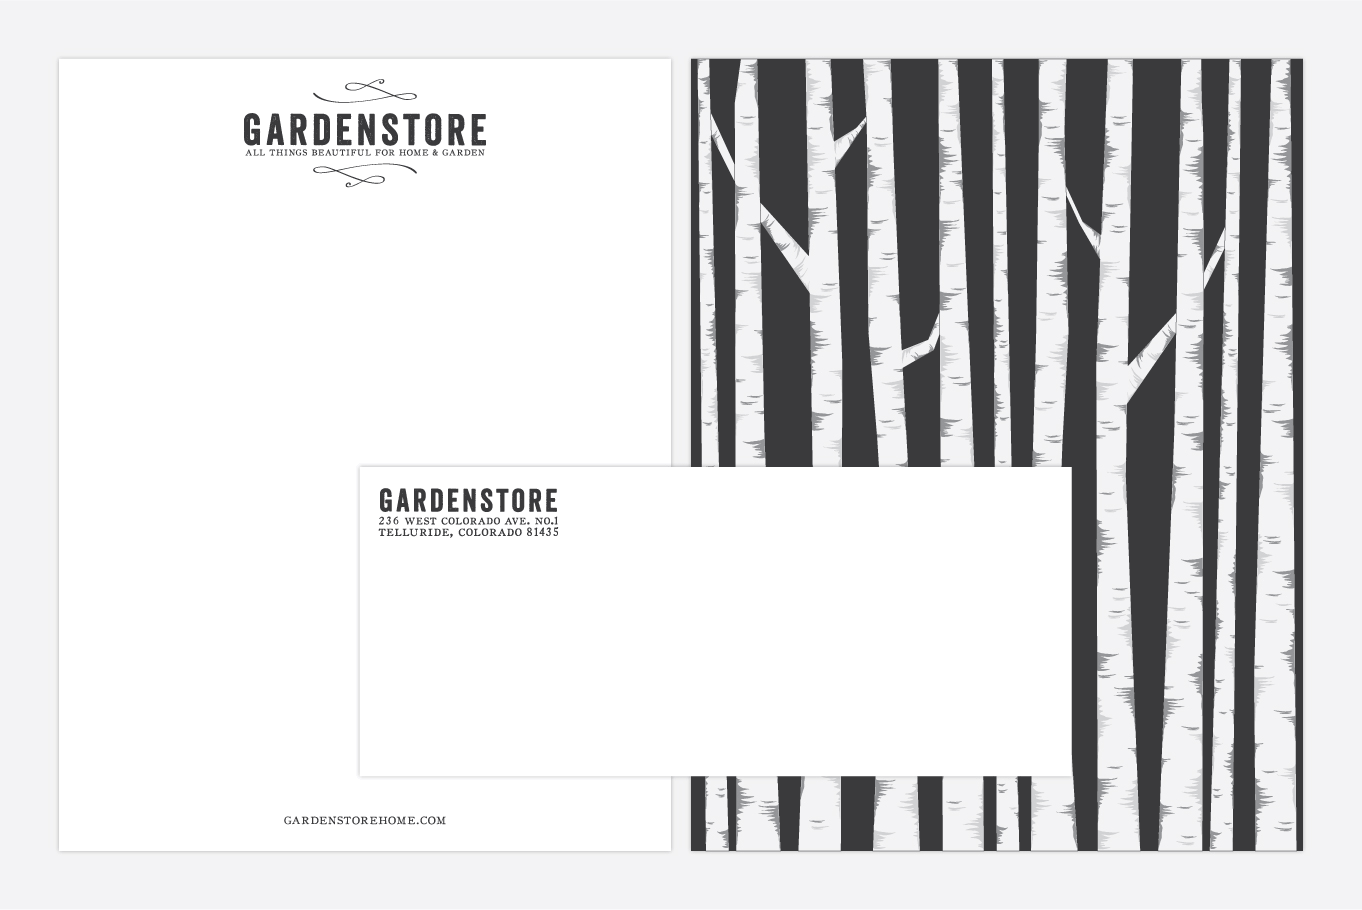 Gardenstore letterhead